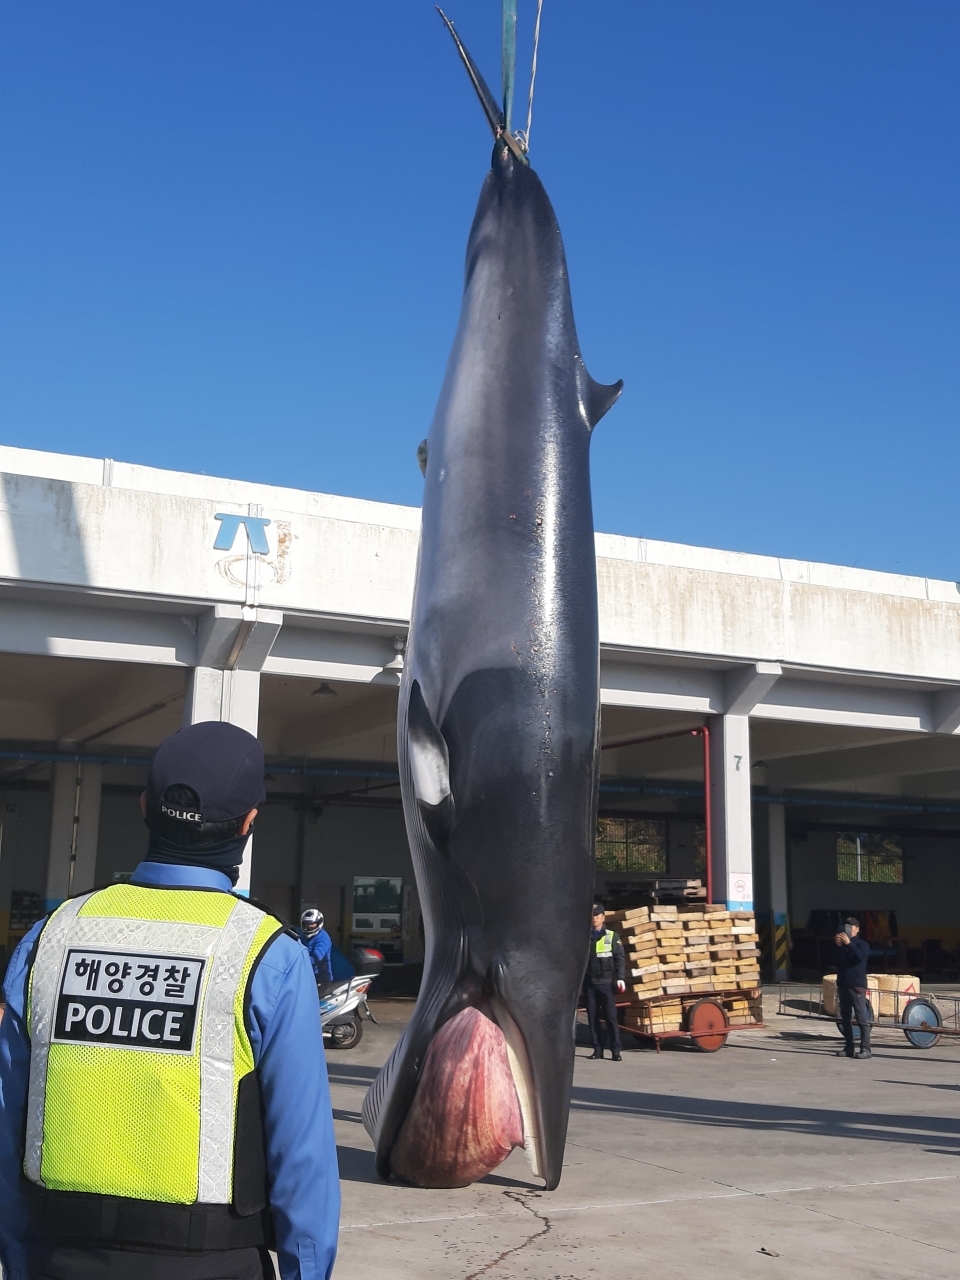 2019년 12월 2일 울산시 동구 방어진항에서 밍크고래 가 육지로 인양되고 있다. 울산해양경찰서는 이날 울산항 묘박지에서 표류하고 있던 고래 사체를 경비함정이 발견해 방어진항으로 옮겼다고 밝혔다. (사진 울산해양경찰서 제공)